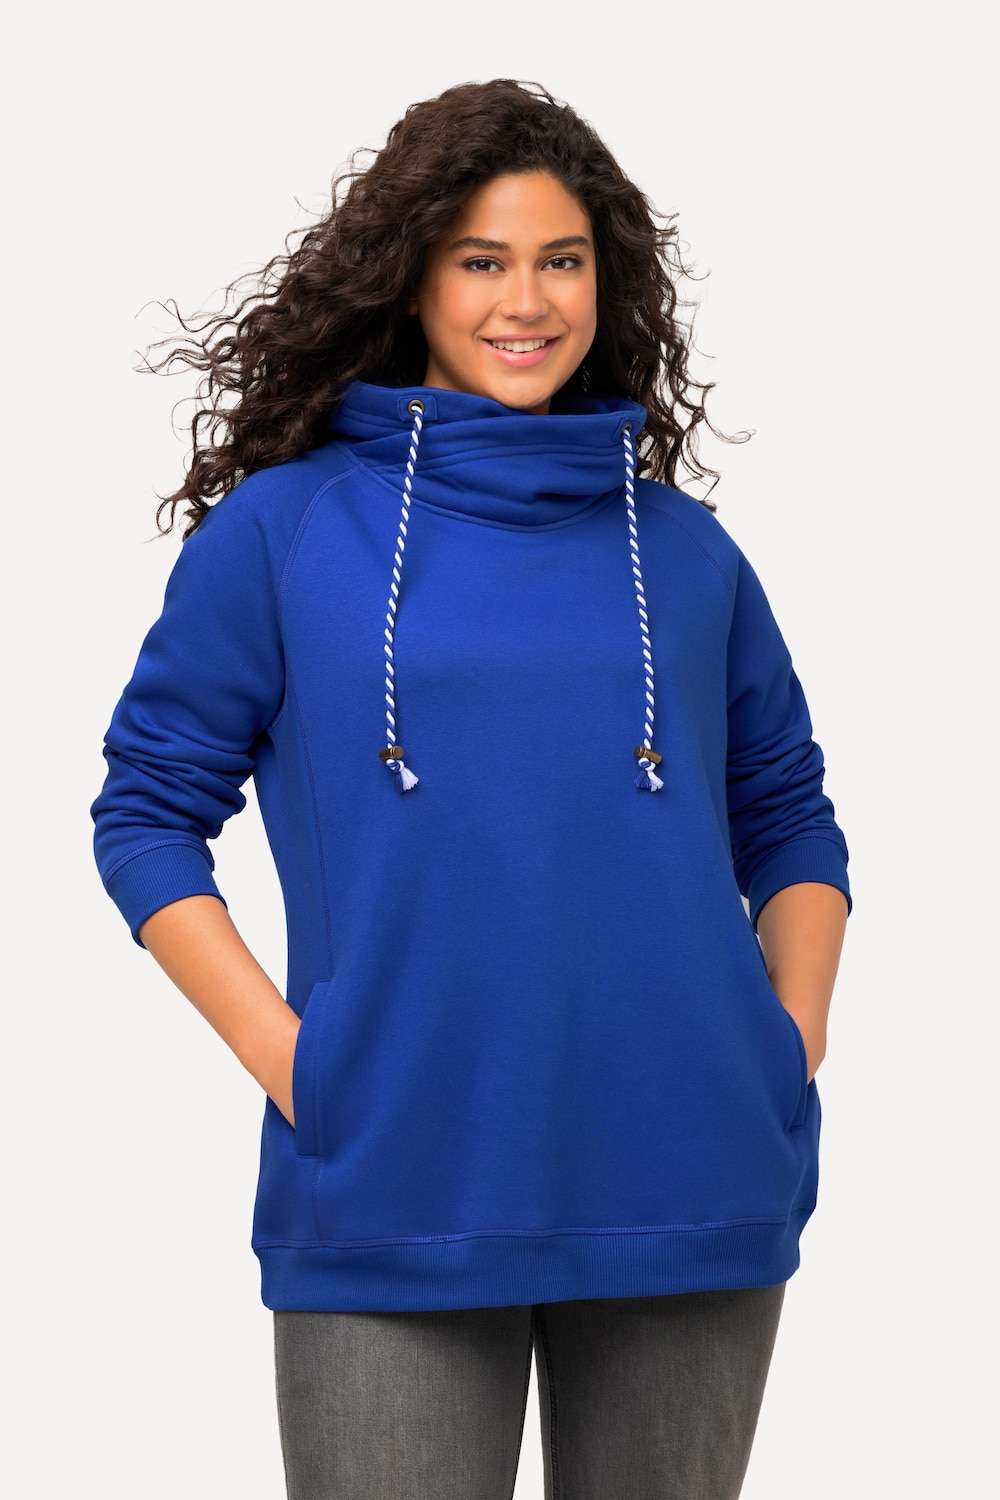 Grote Maten sweatshirt, Dames, blauw, Maat: 50/52, Katoen/Polyester, Ulla Popken